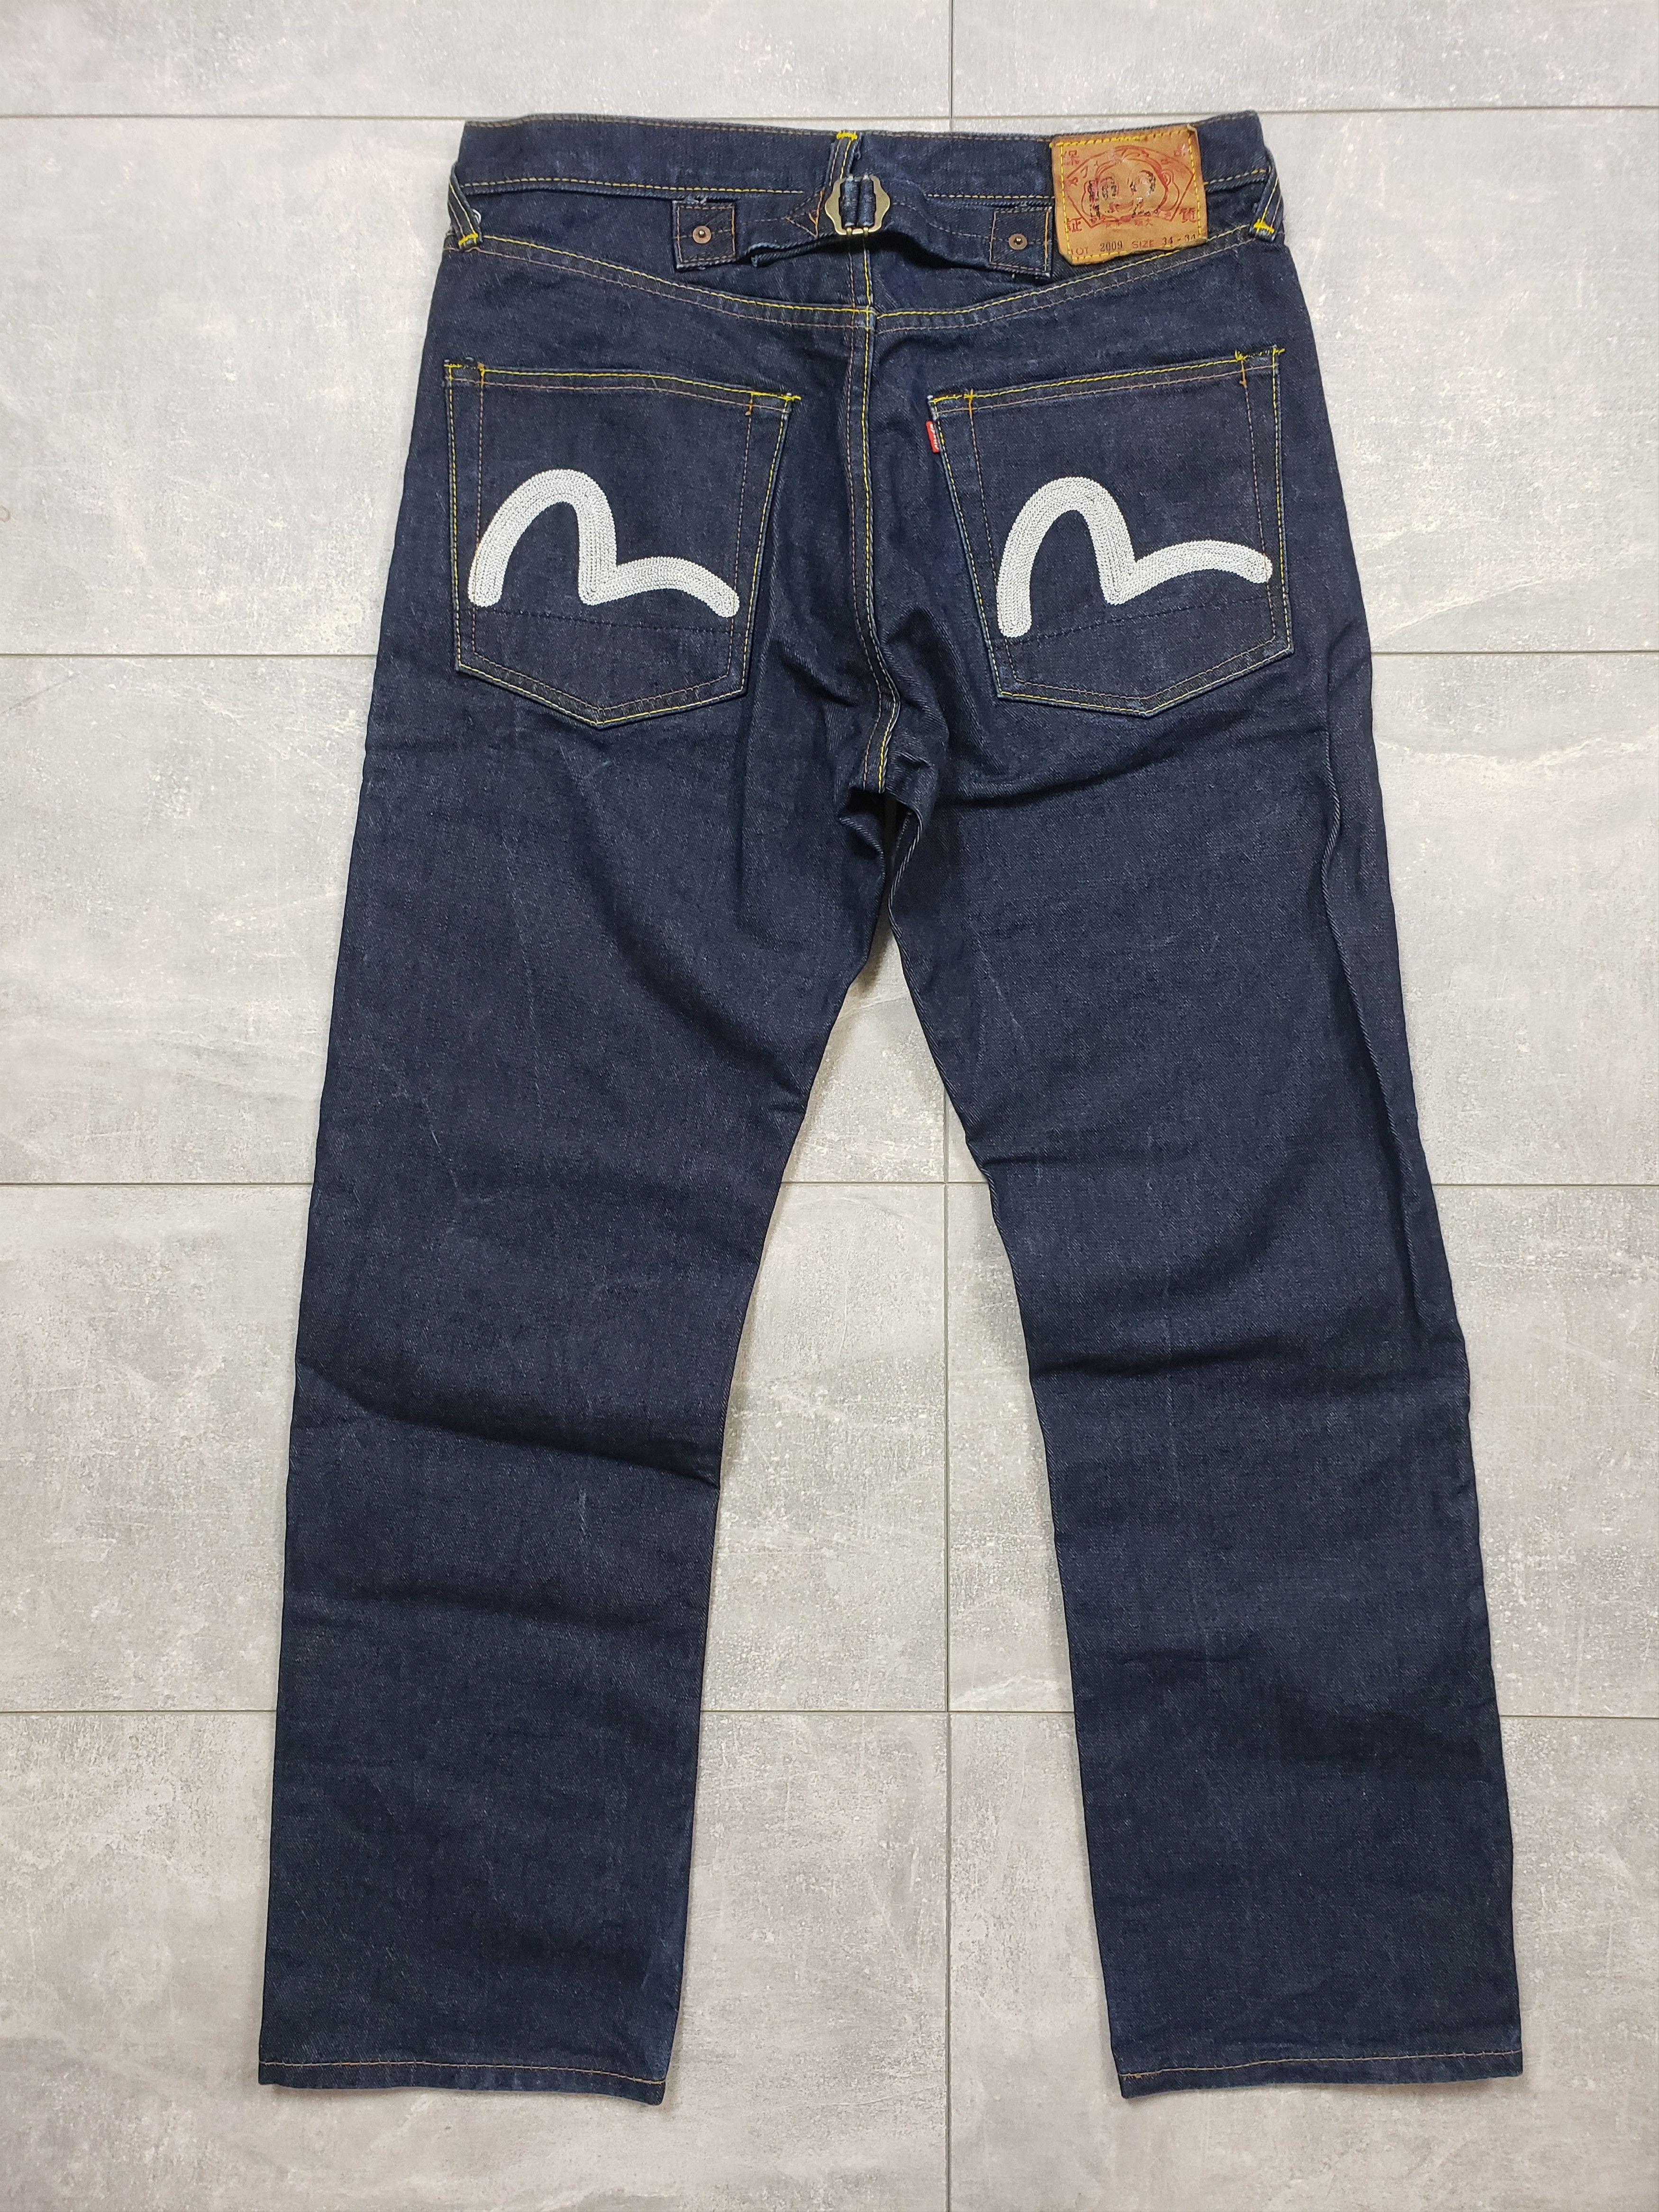 Evisu Evisu denim pants big logo jeans selvedge Size US 34 / EU 50 - 1 Preview